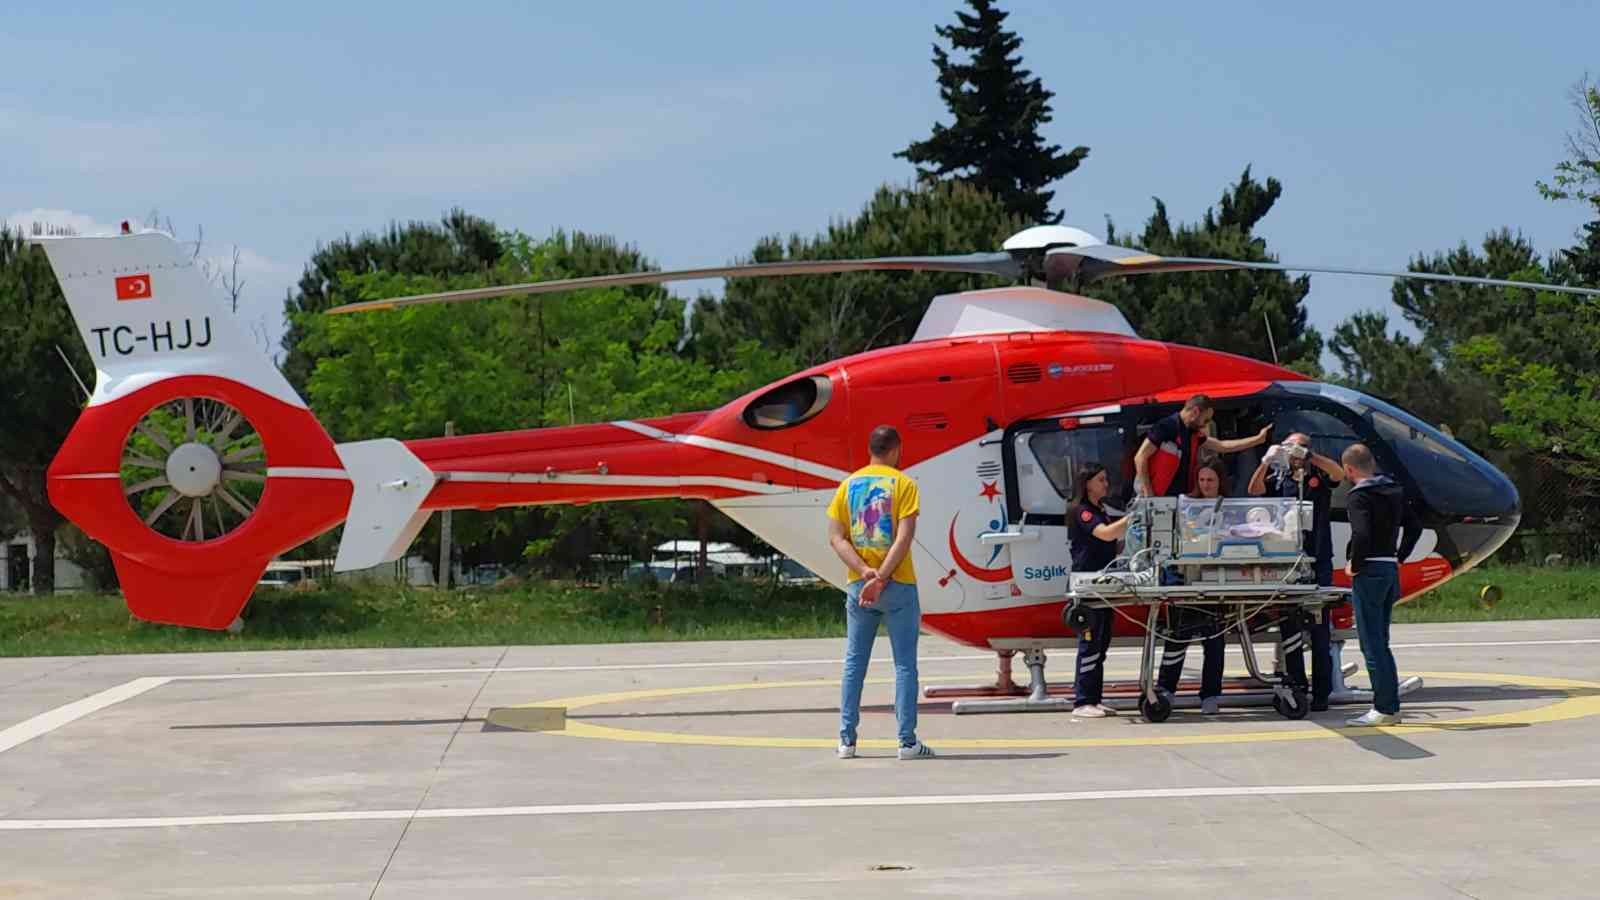 'Parmak bebek' ambulans helikopterle hastaneye sevk edildi
